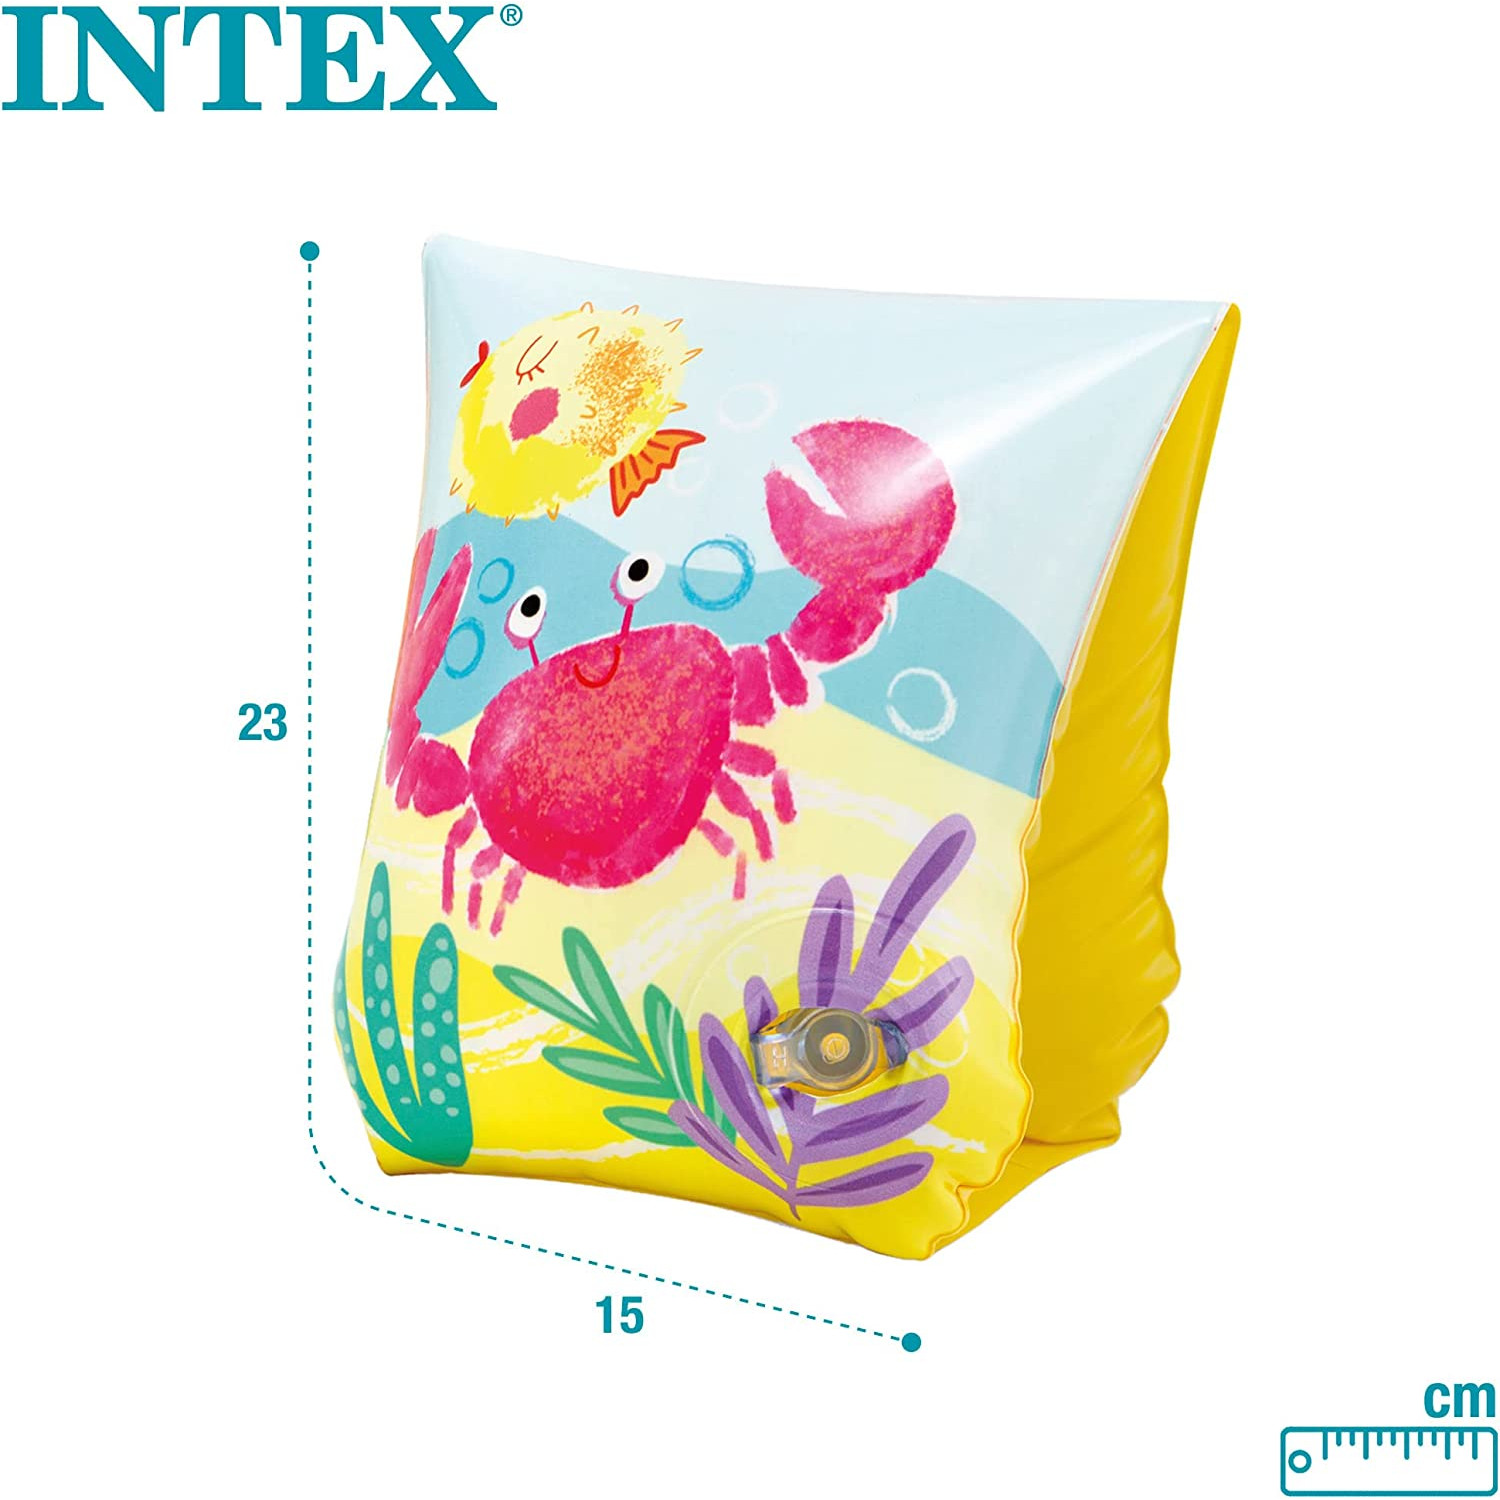 INTEX 58652EU - Tropcial Buddies Schwimmhilfe, (23x15cm) mehrfarbig